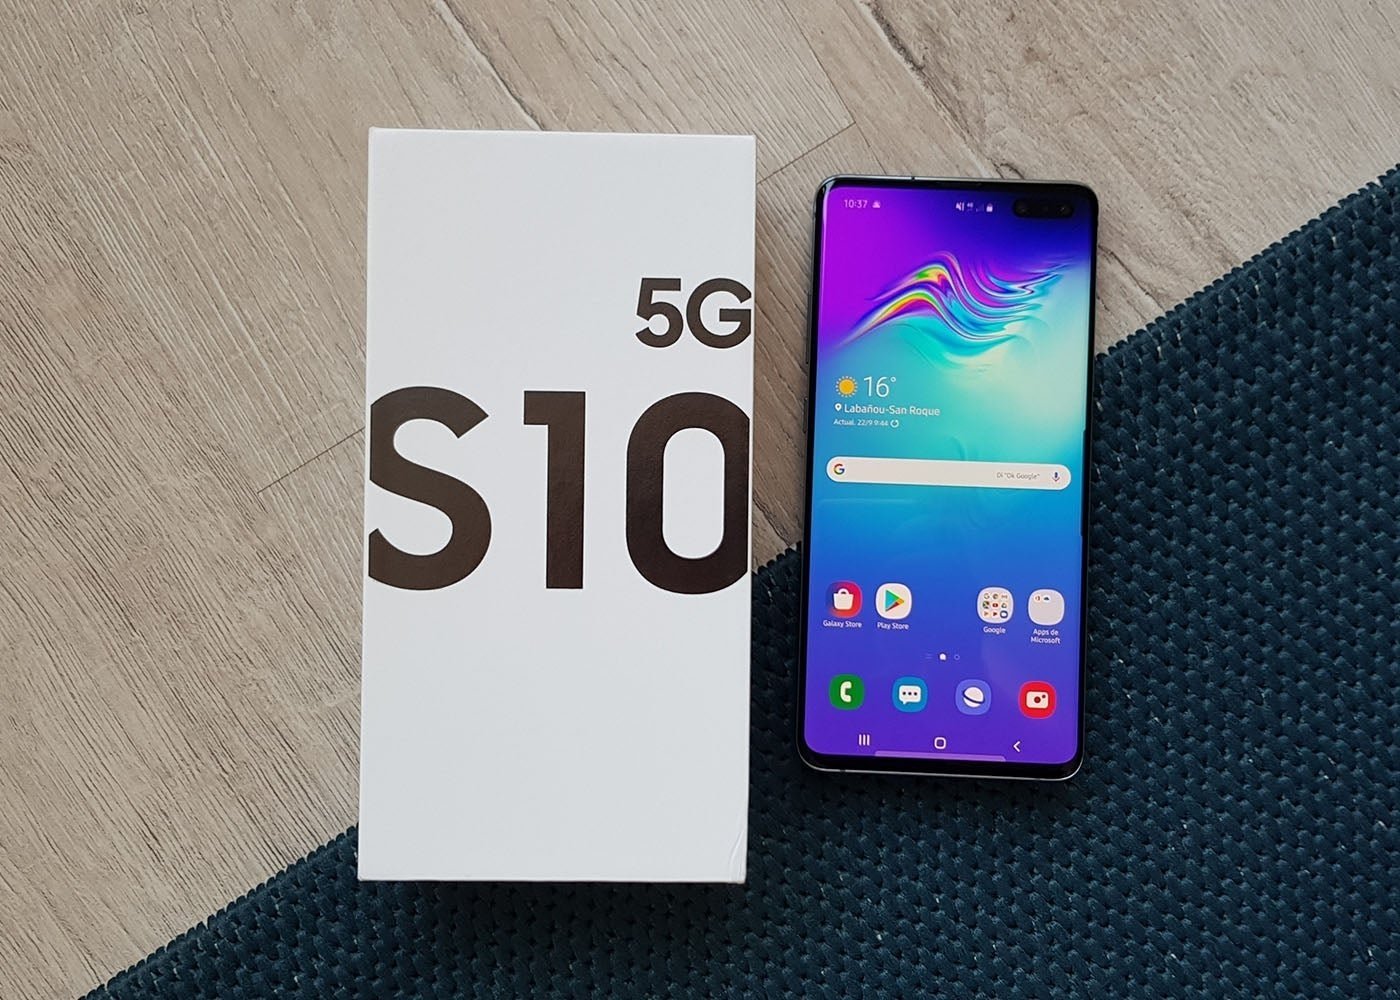 Análisis y experiencia de uso de un móvil 5G en 2019